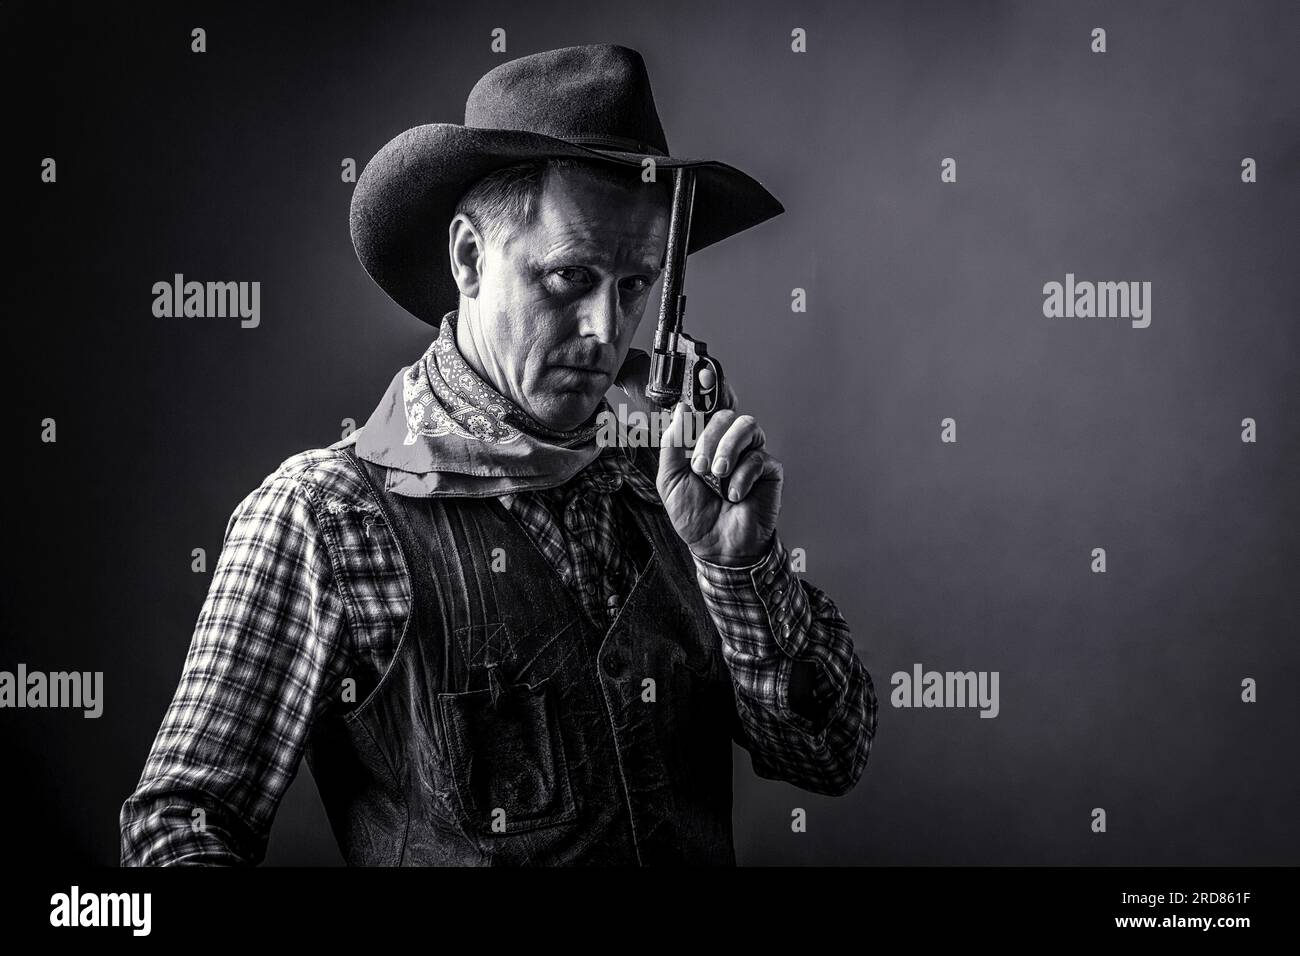 West, Guns. Portrait d'un homme portant un chapeau de cow-boy, arme à feu.  Portrait d'un cow-boy. Bandit américain en masque, homme occidental avec  chapeau. Noir et blanc Photo Stock - Alamy